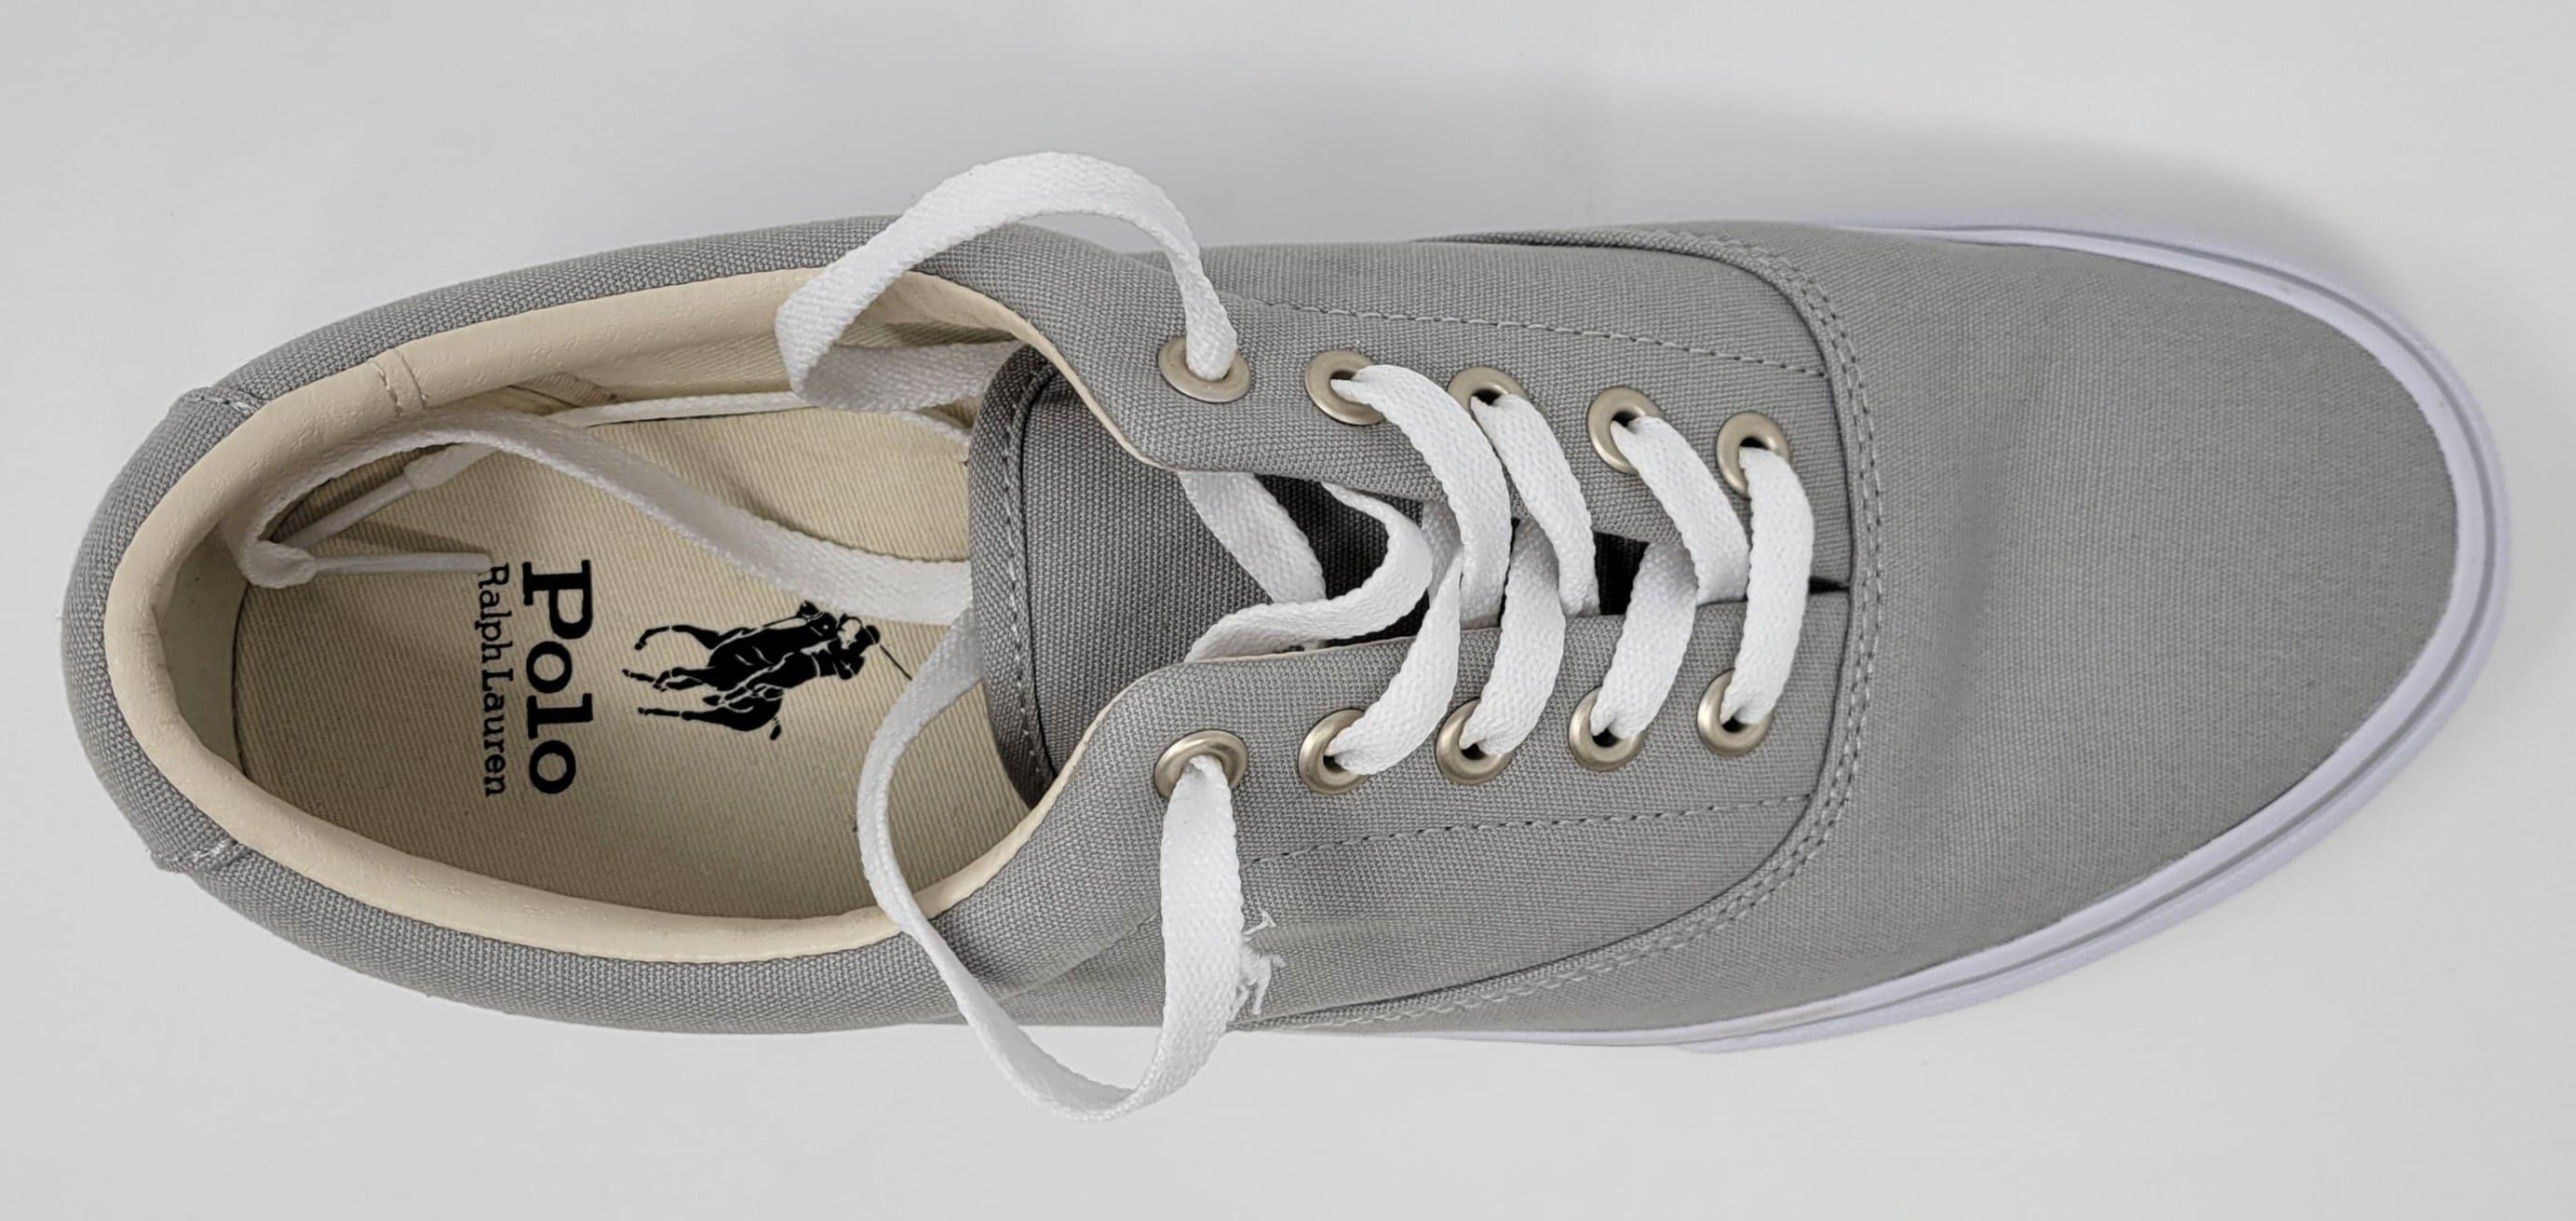 Laflamme- Chaussures sneakers gris - Ralph lauren